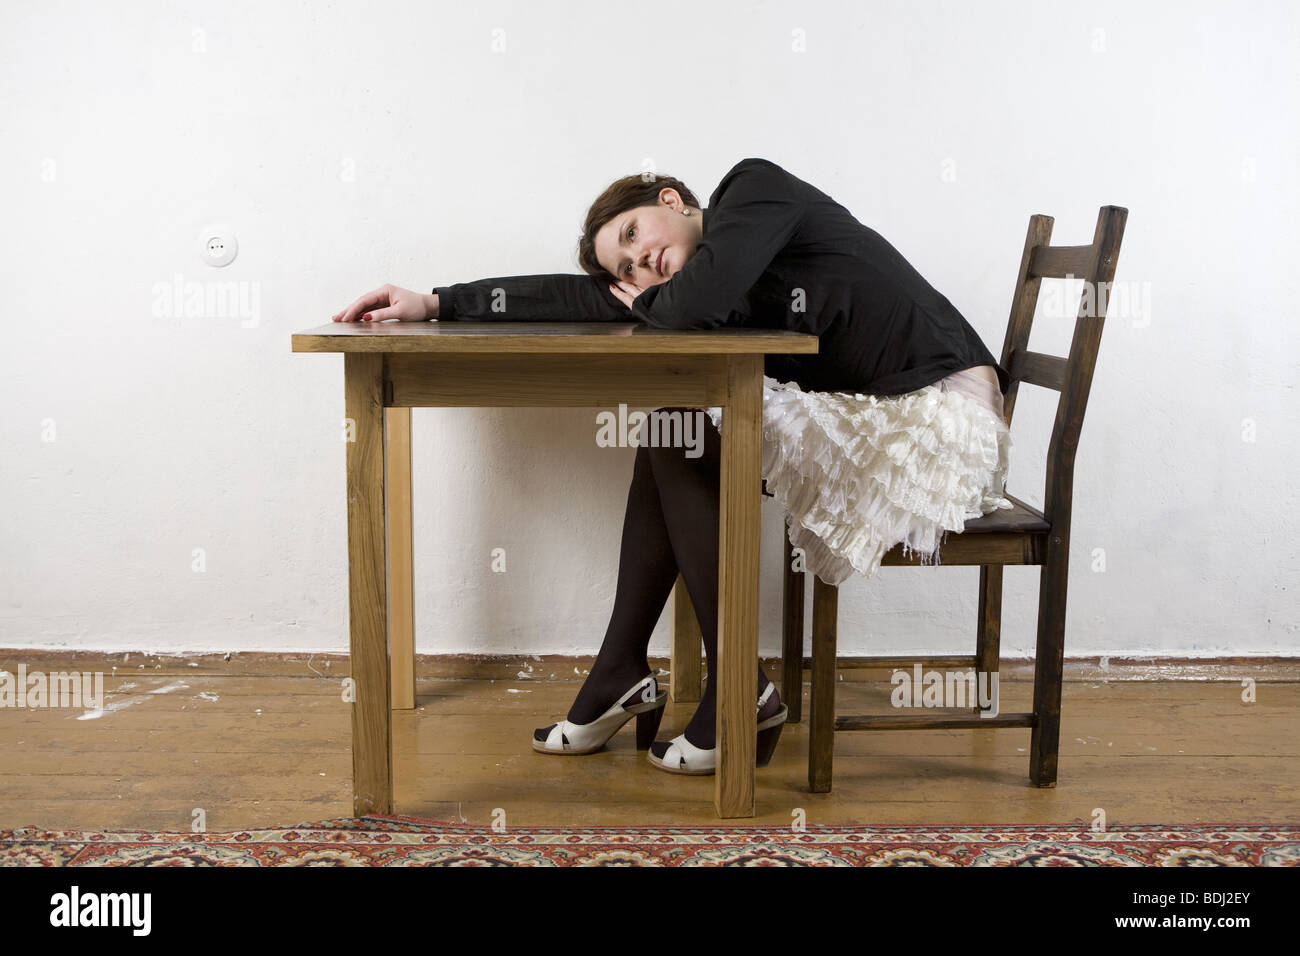 Сидя постою. Человек сидит на стуле за столом. Человек лежит на столе. Девушка сидит облокотившись на стол. Стул лежит.